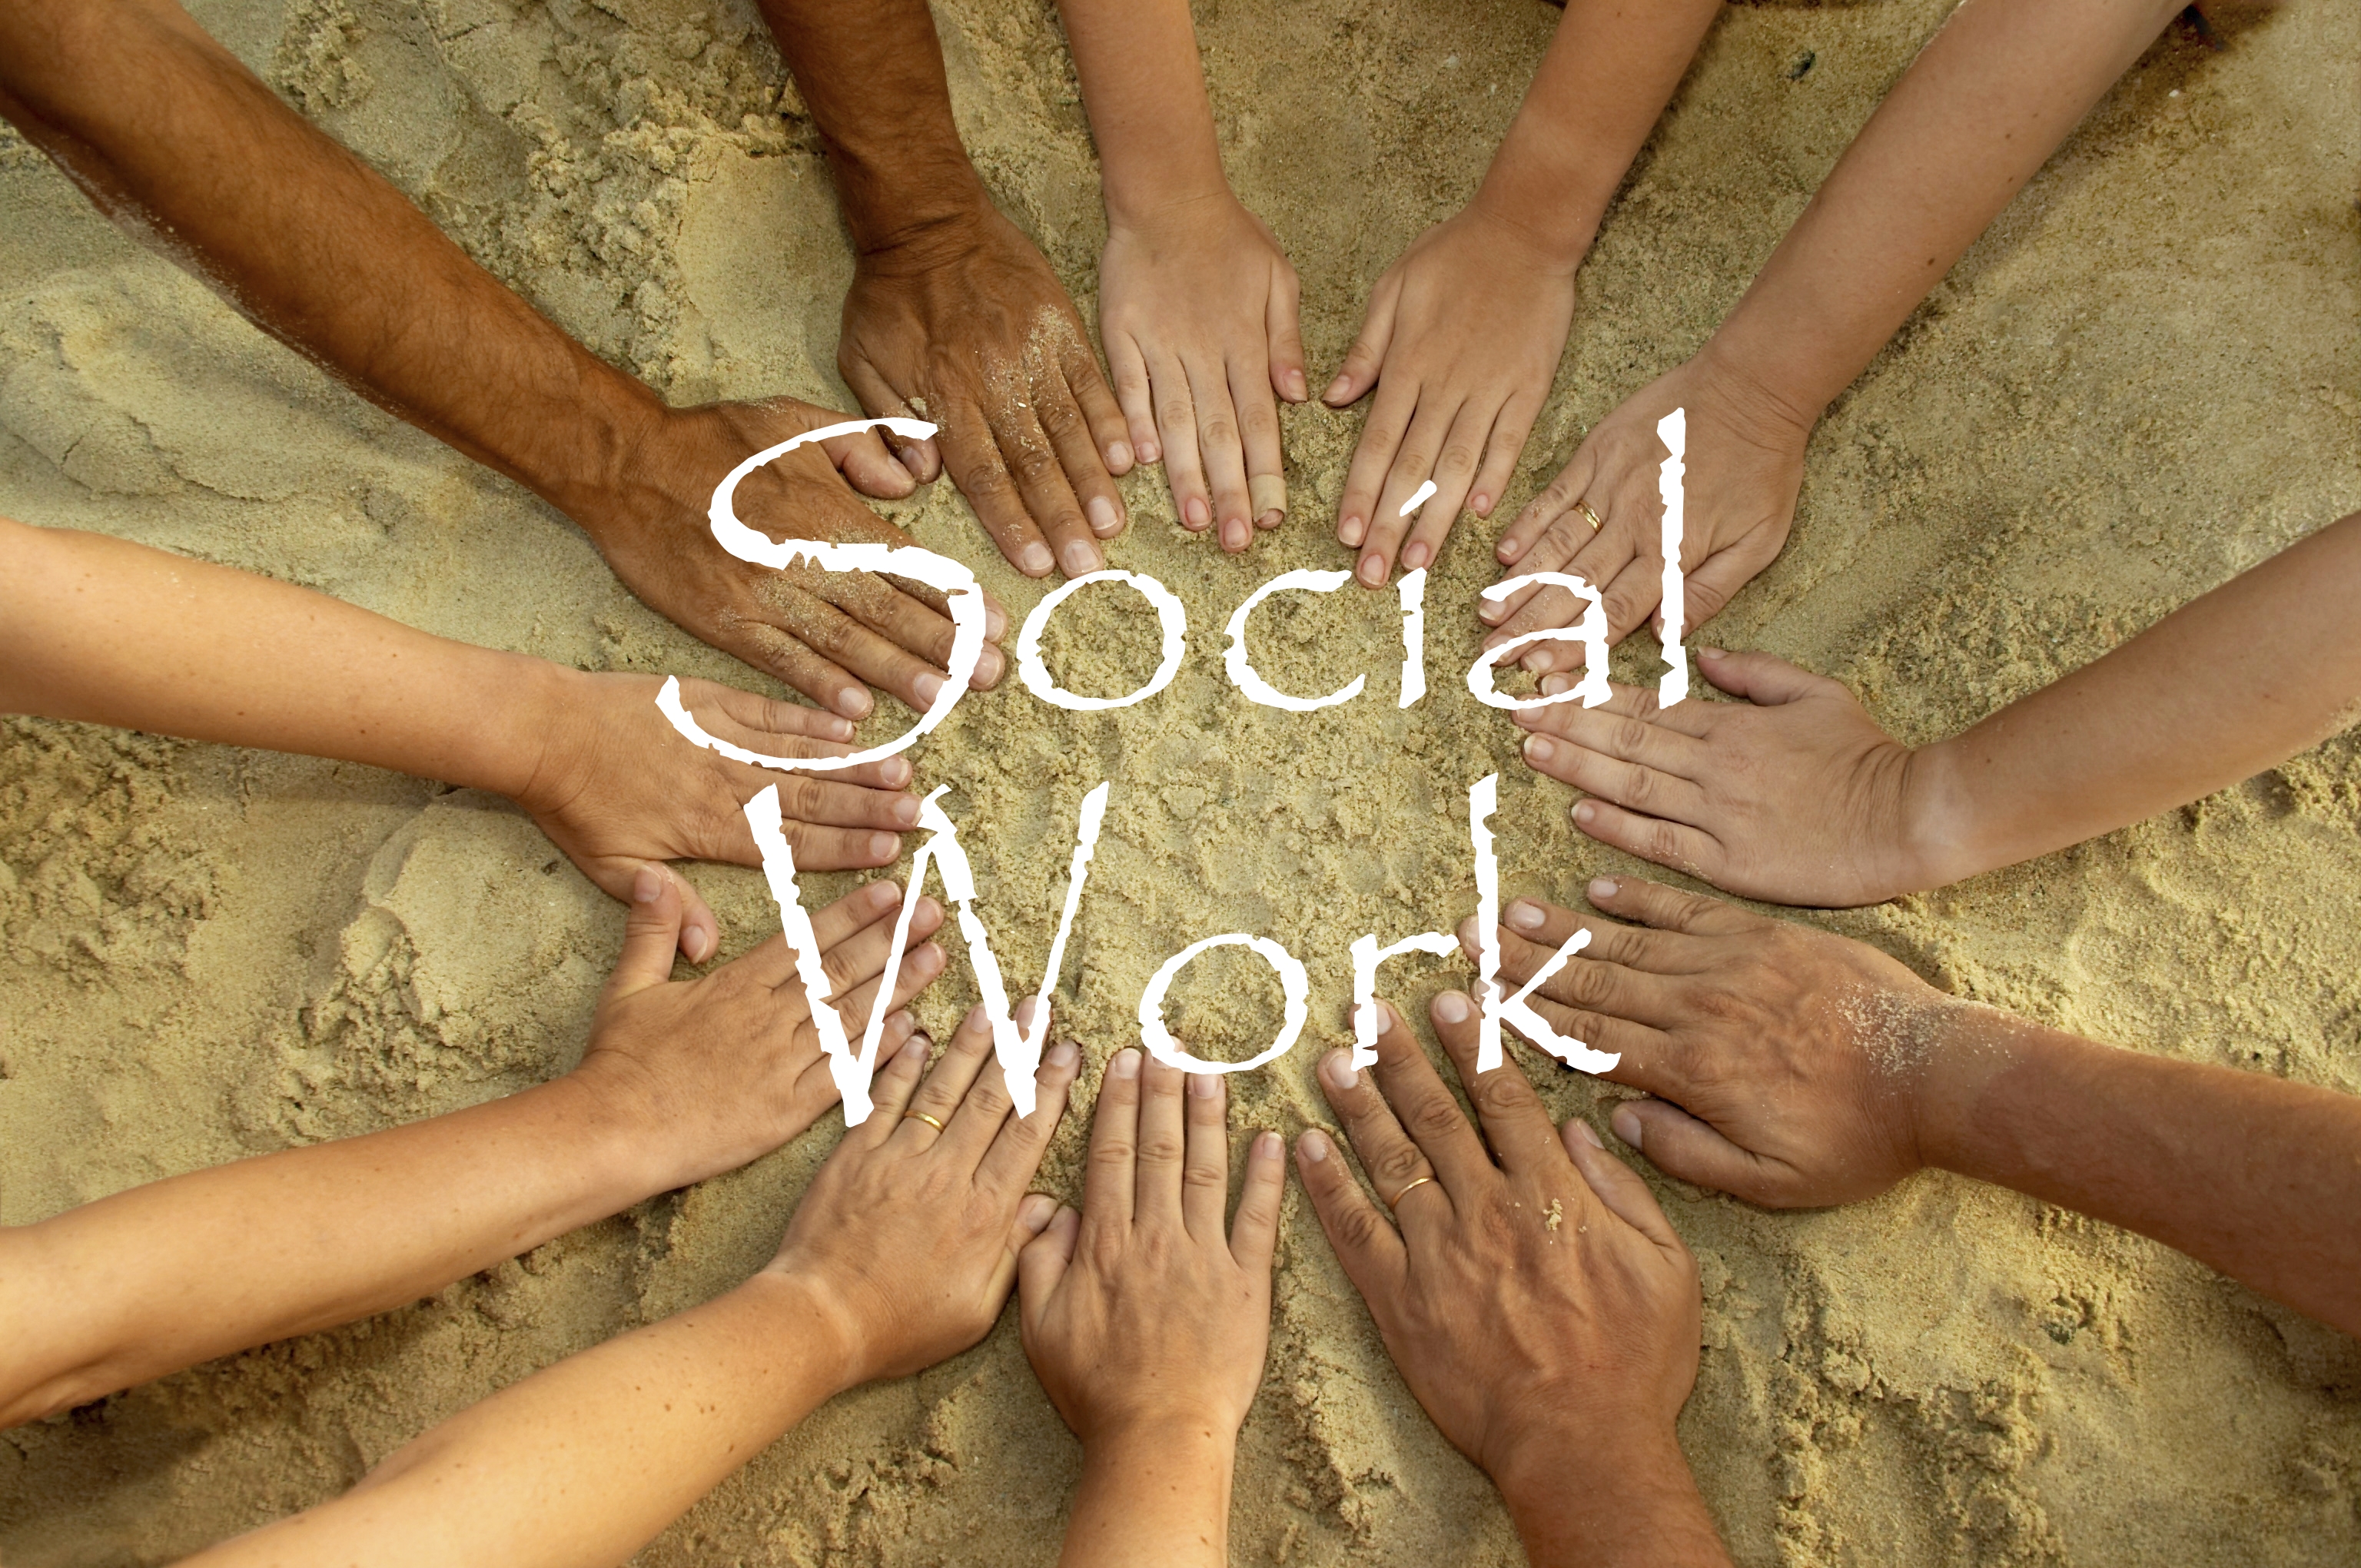 Hoạt động công tác xã hội - một hoạt động thật sự có ý nghĩa và giàu giá trị nhân văn